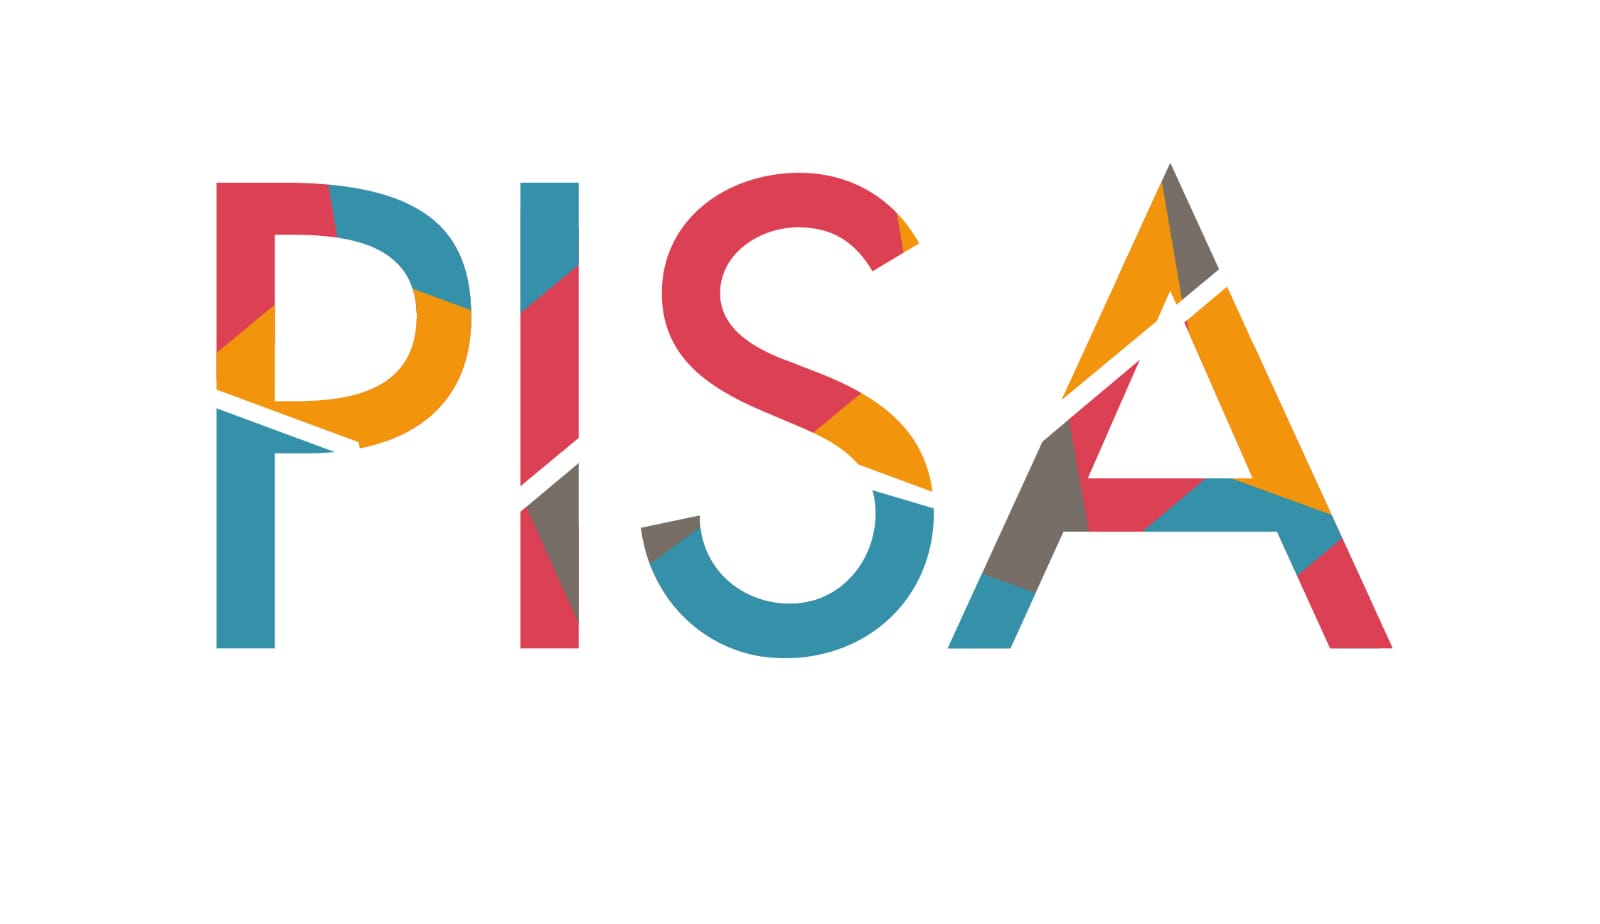 Pruebas PISA 2022:  Colombia, un sistema educativo resiliente que requiere cambios estructurales para mejorar su calidad